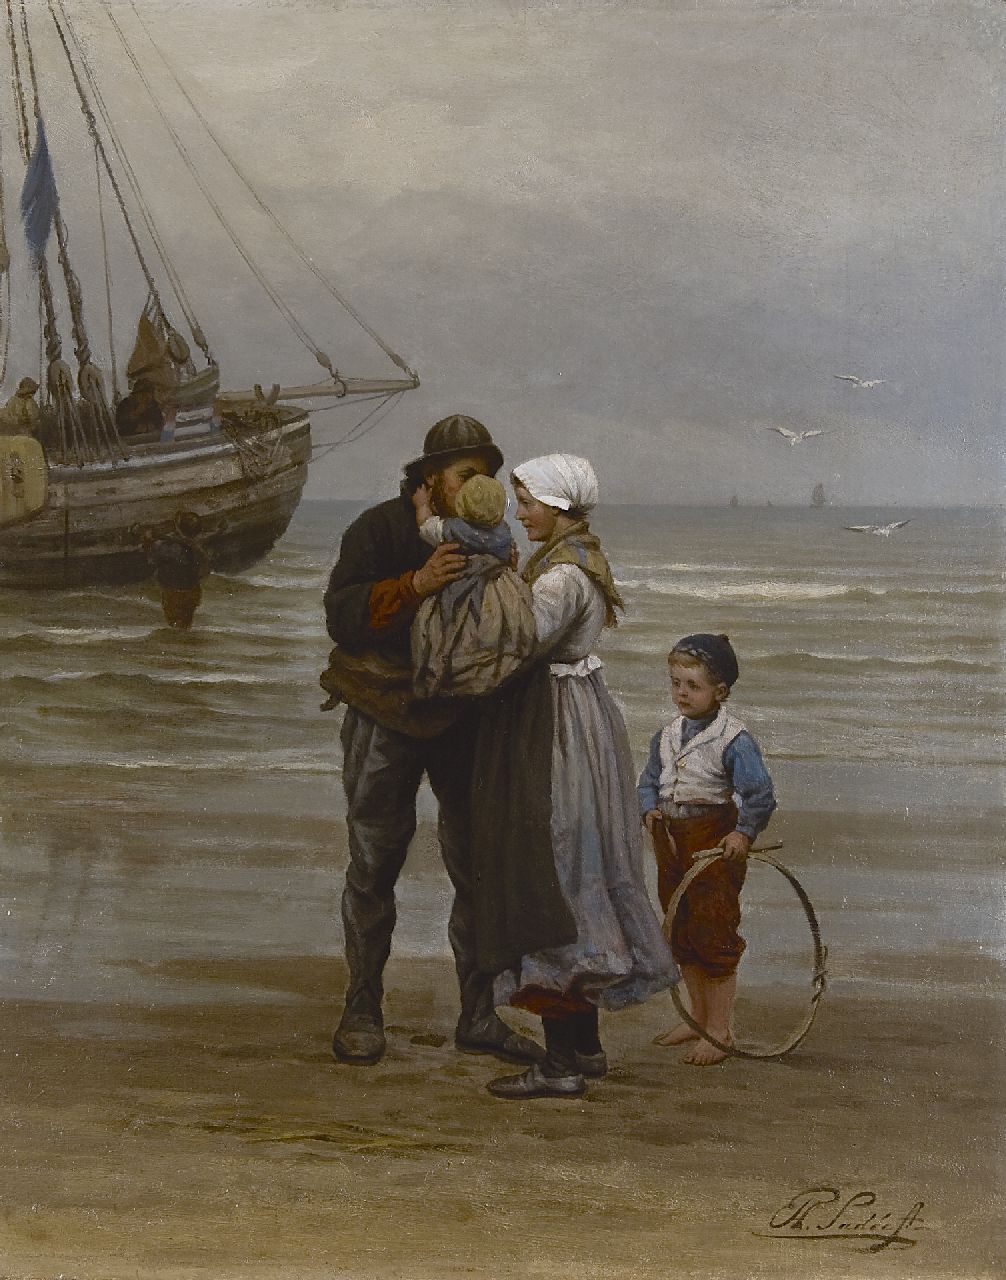 Sadée P.L.J.F.  | Philip Lodewijk Jacob Frederik Sadée, The farwell, oil on canvas 70.0 x 56.0 cm, signed l.r.